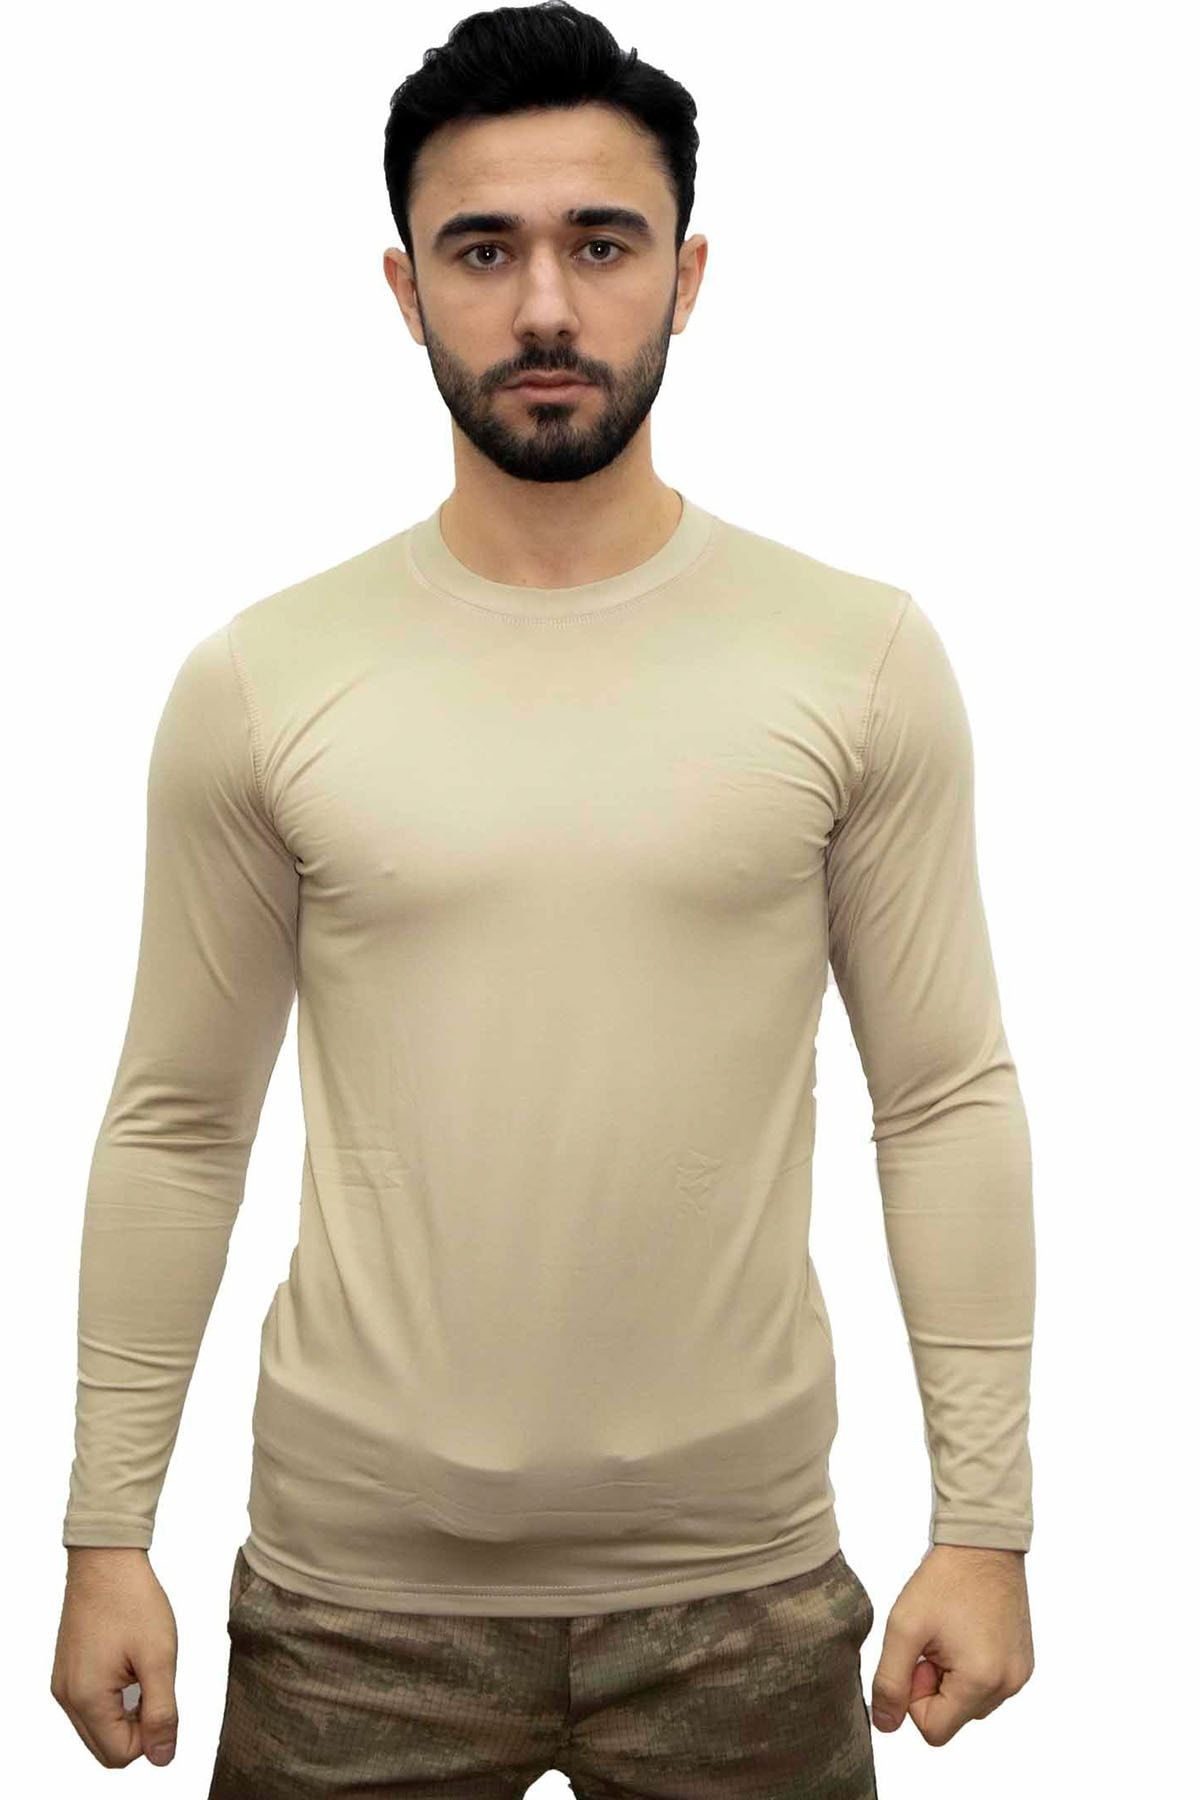 KORDAK Bej Askeri Termal Microfiber Uzun Kol Tişört- Mikrofiber Spor Tişörtü